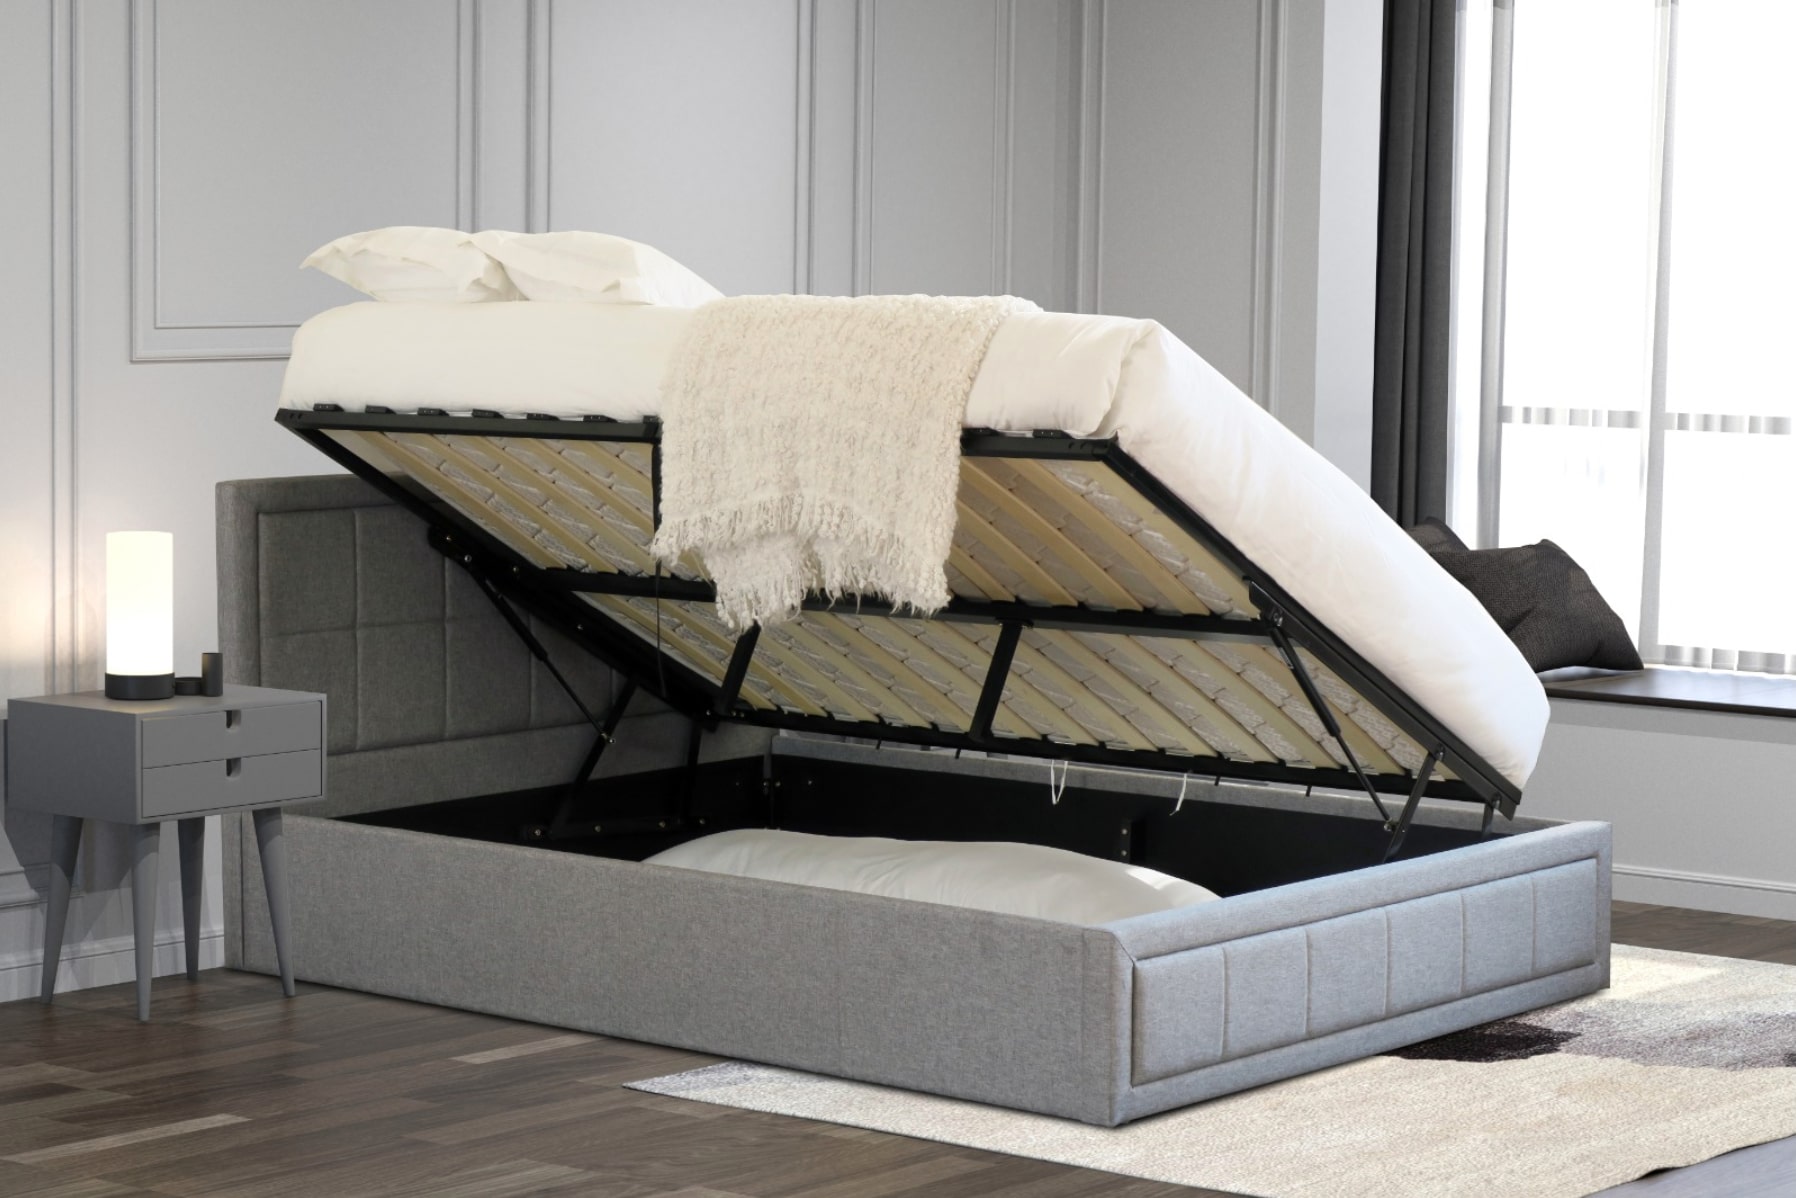 mattress for castro ottoman bed